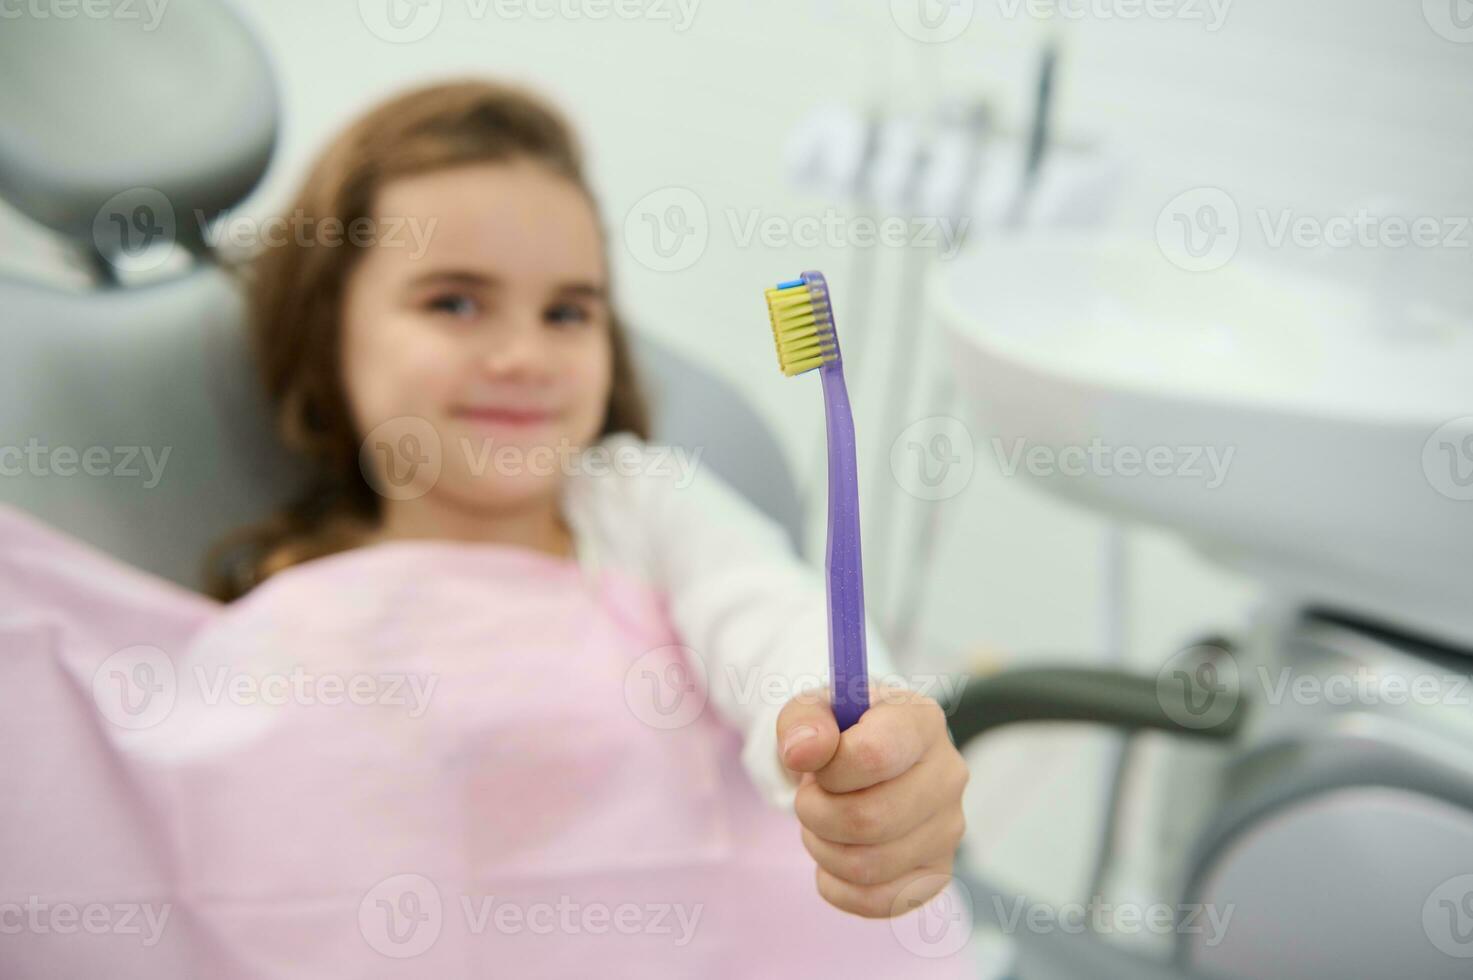 atención en un cepillo de dientes en el mano de un alegre bonito niña lindo sonriente mirando a cámara sentado en del dentista silla durante dental chequeo. oral cuidado y higiene. pediatra odontología concepto foto